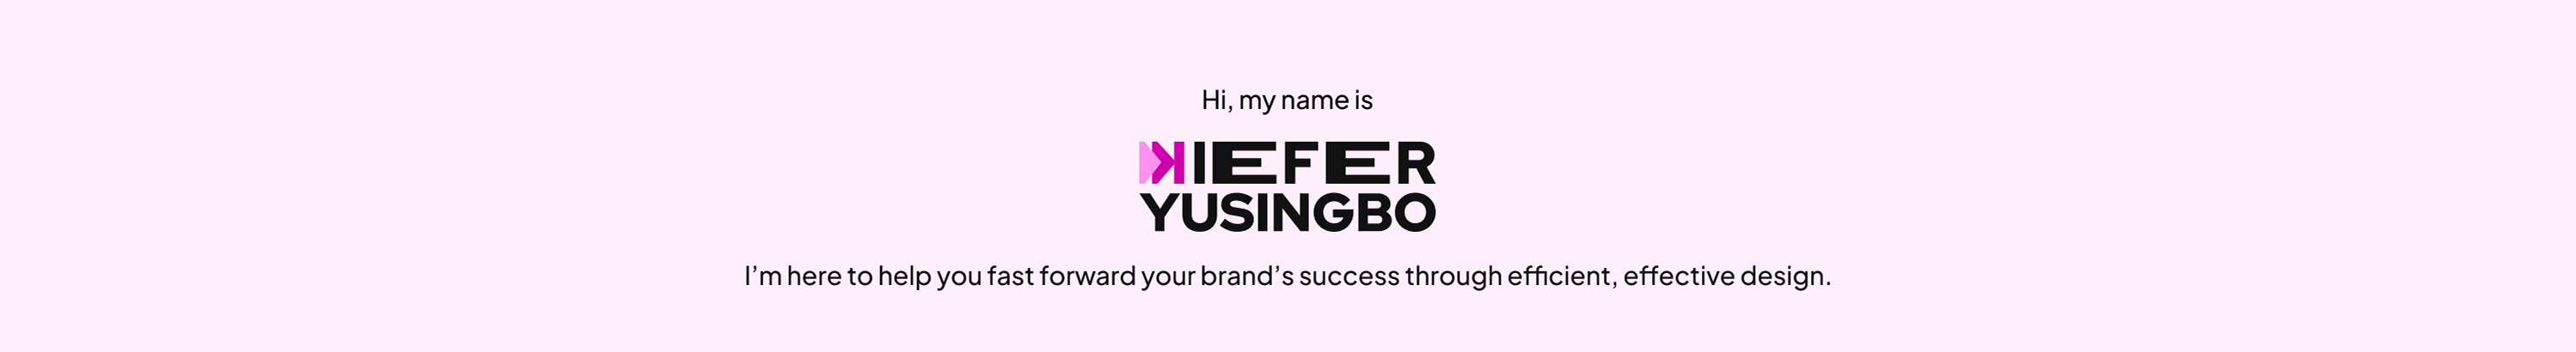 Kiefer Mae Yusingbos profilbanner